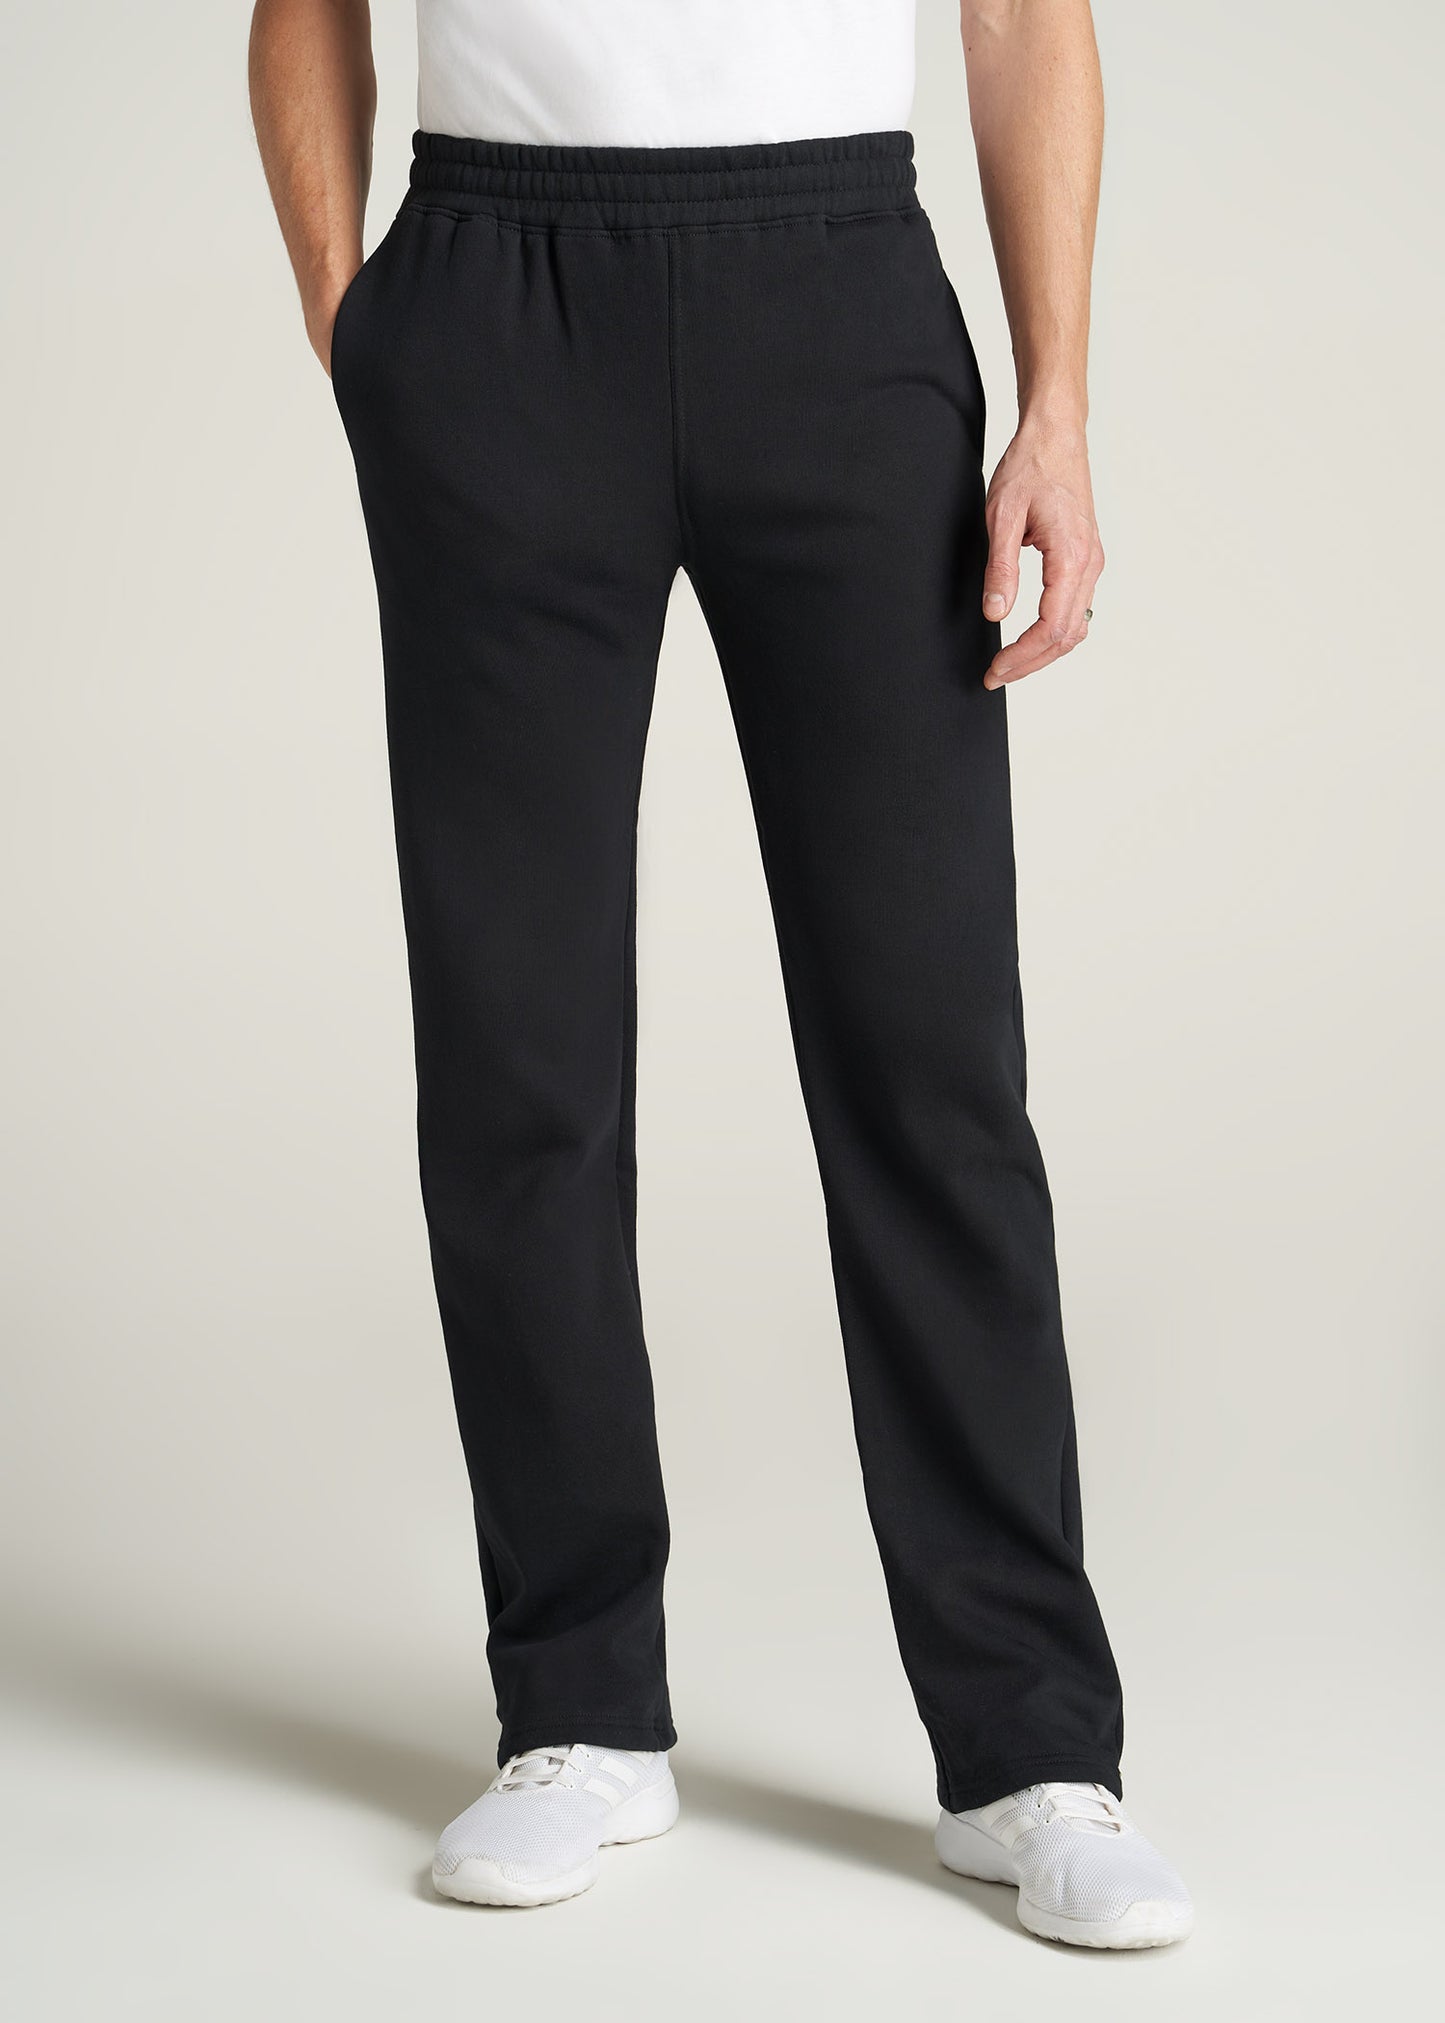 A tall man wearing American Tall's Wearever Fleece Open-Bottom Sweatpants for Tall Men in Black.